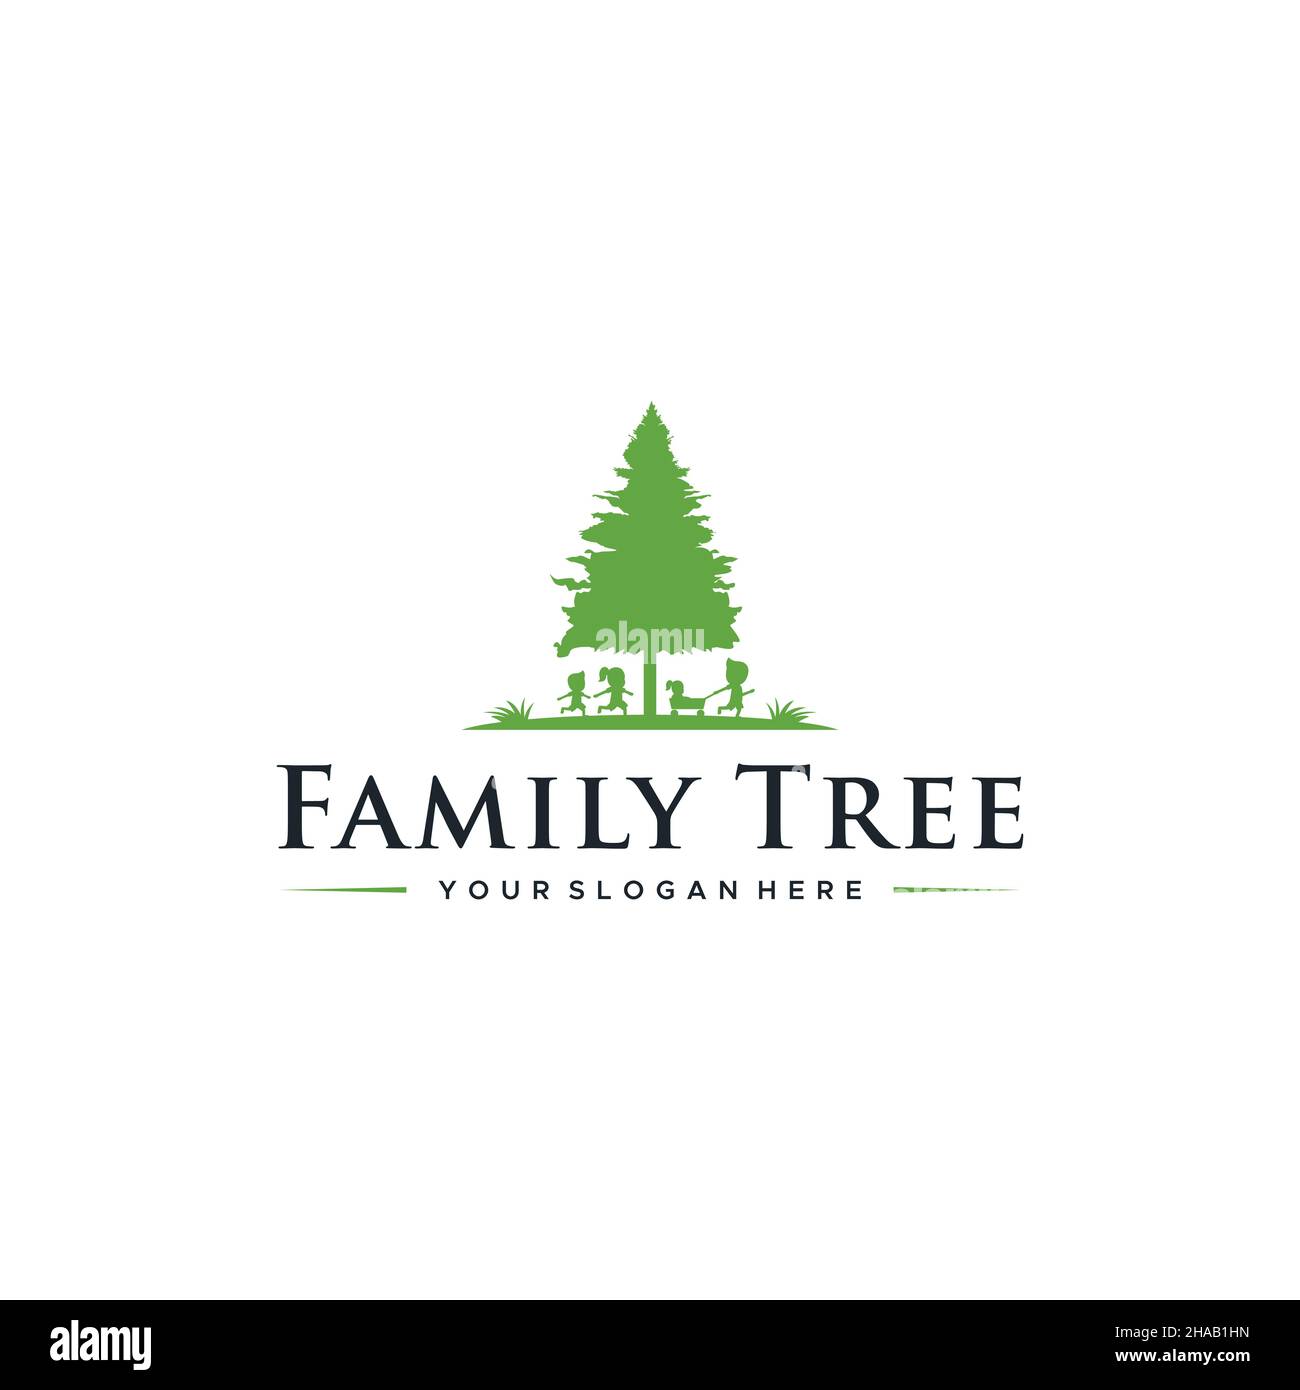 Modernes flaches Buchstabenzeichen grünes Baum-Logo-Design Stock Vektor